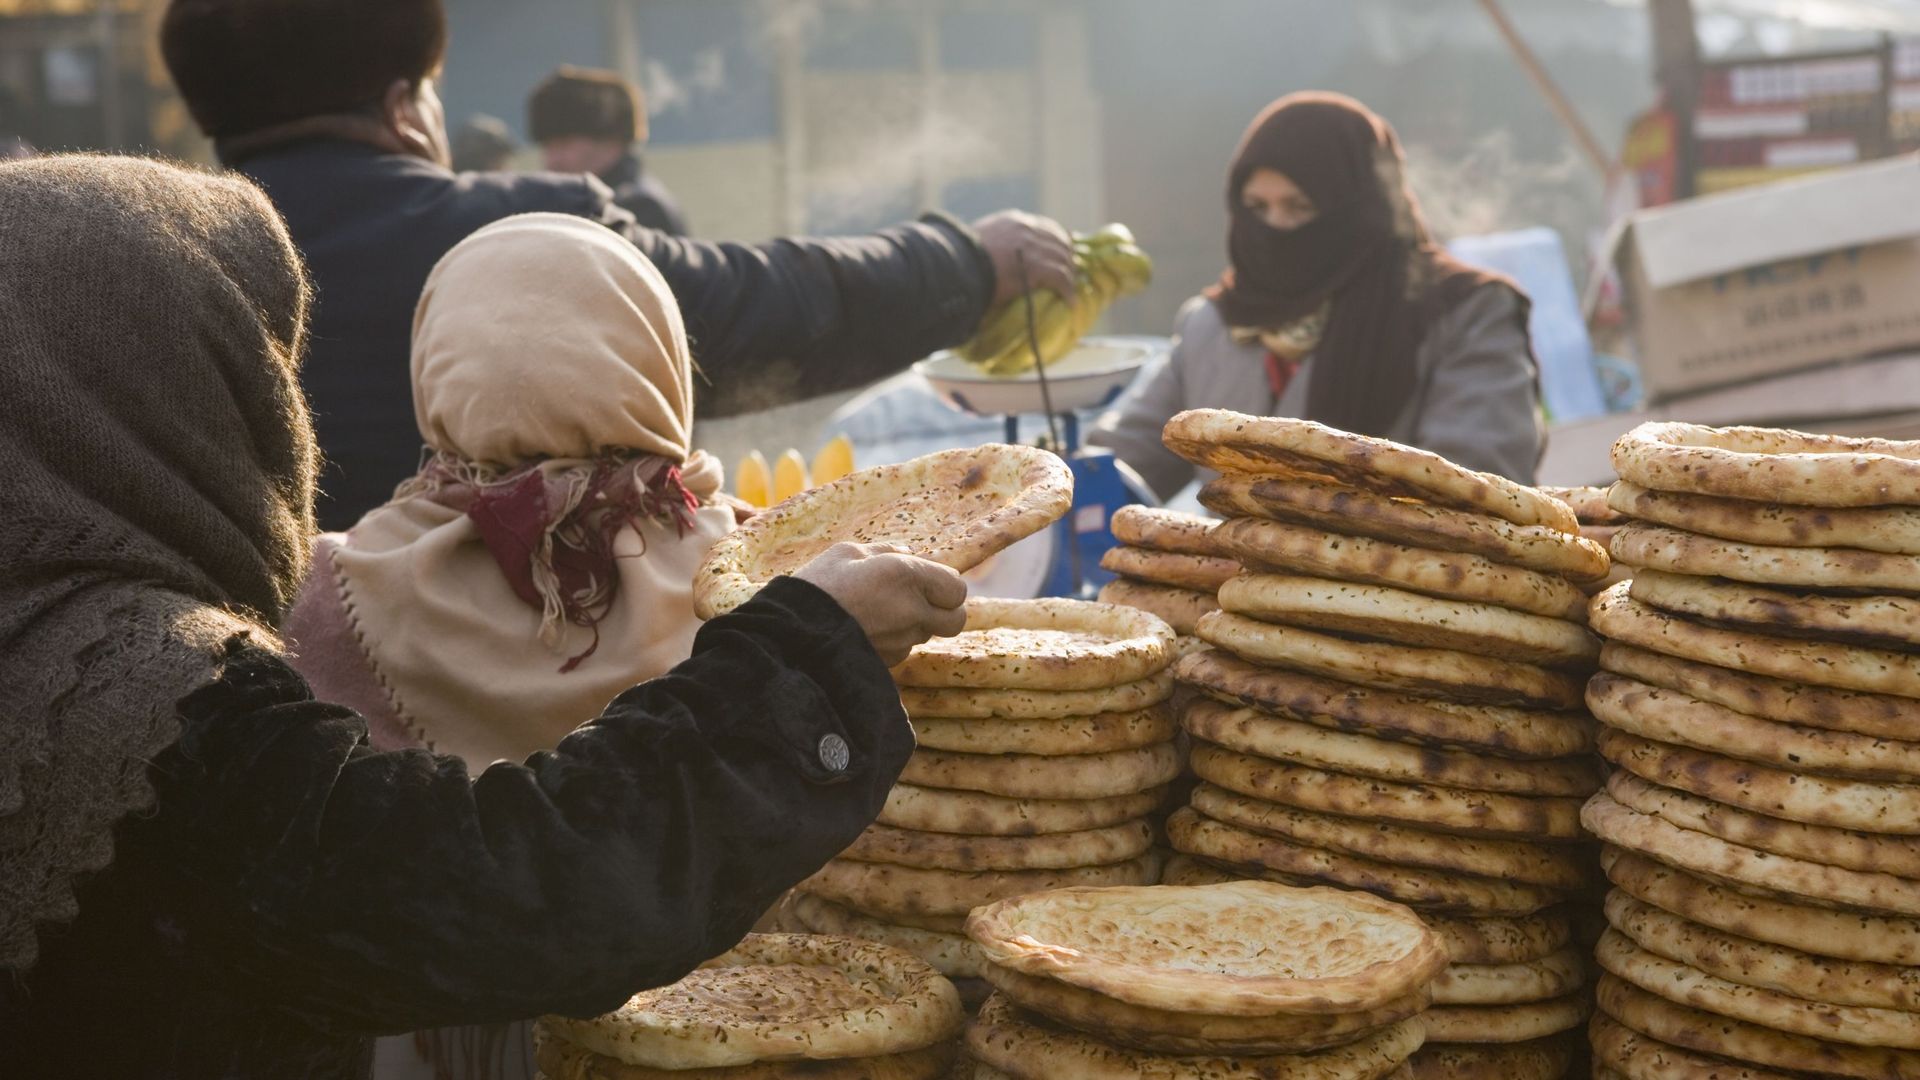 Femme prenant du pain dans une pile au marché à Kashgar, Xinjiang, Chine (illustration)